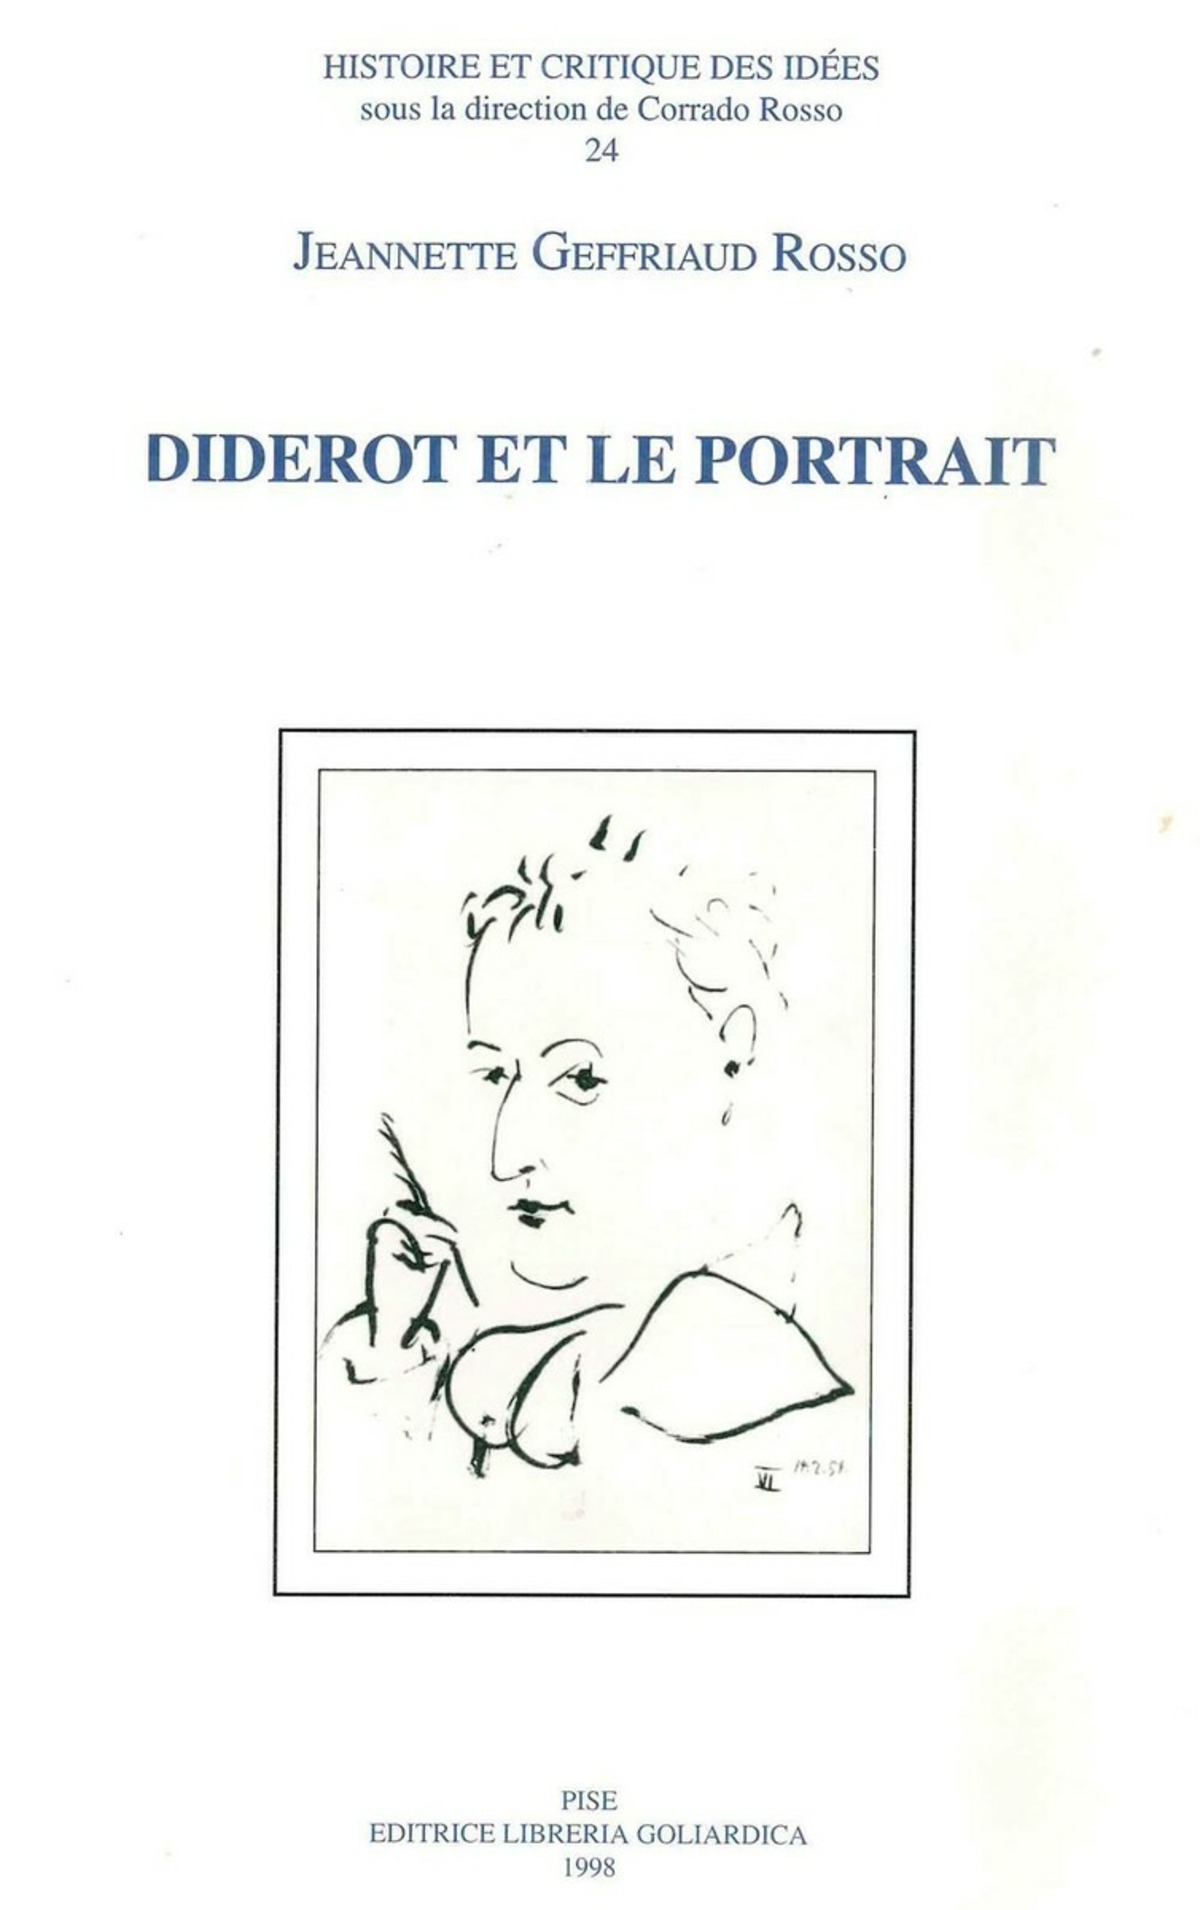 Diderot et le portrait